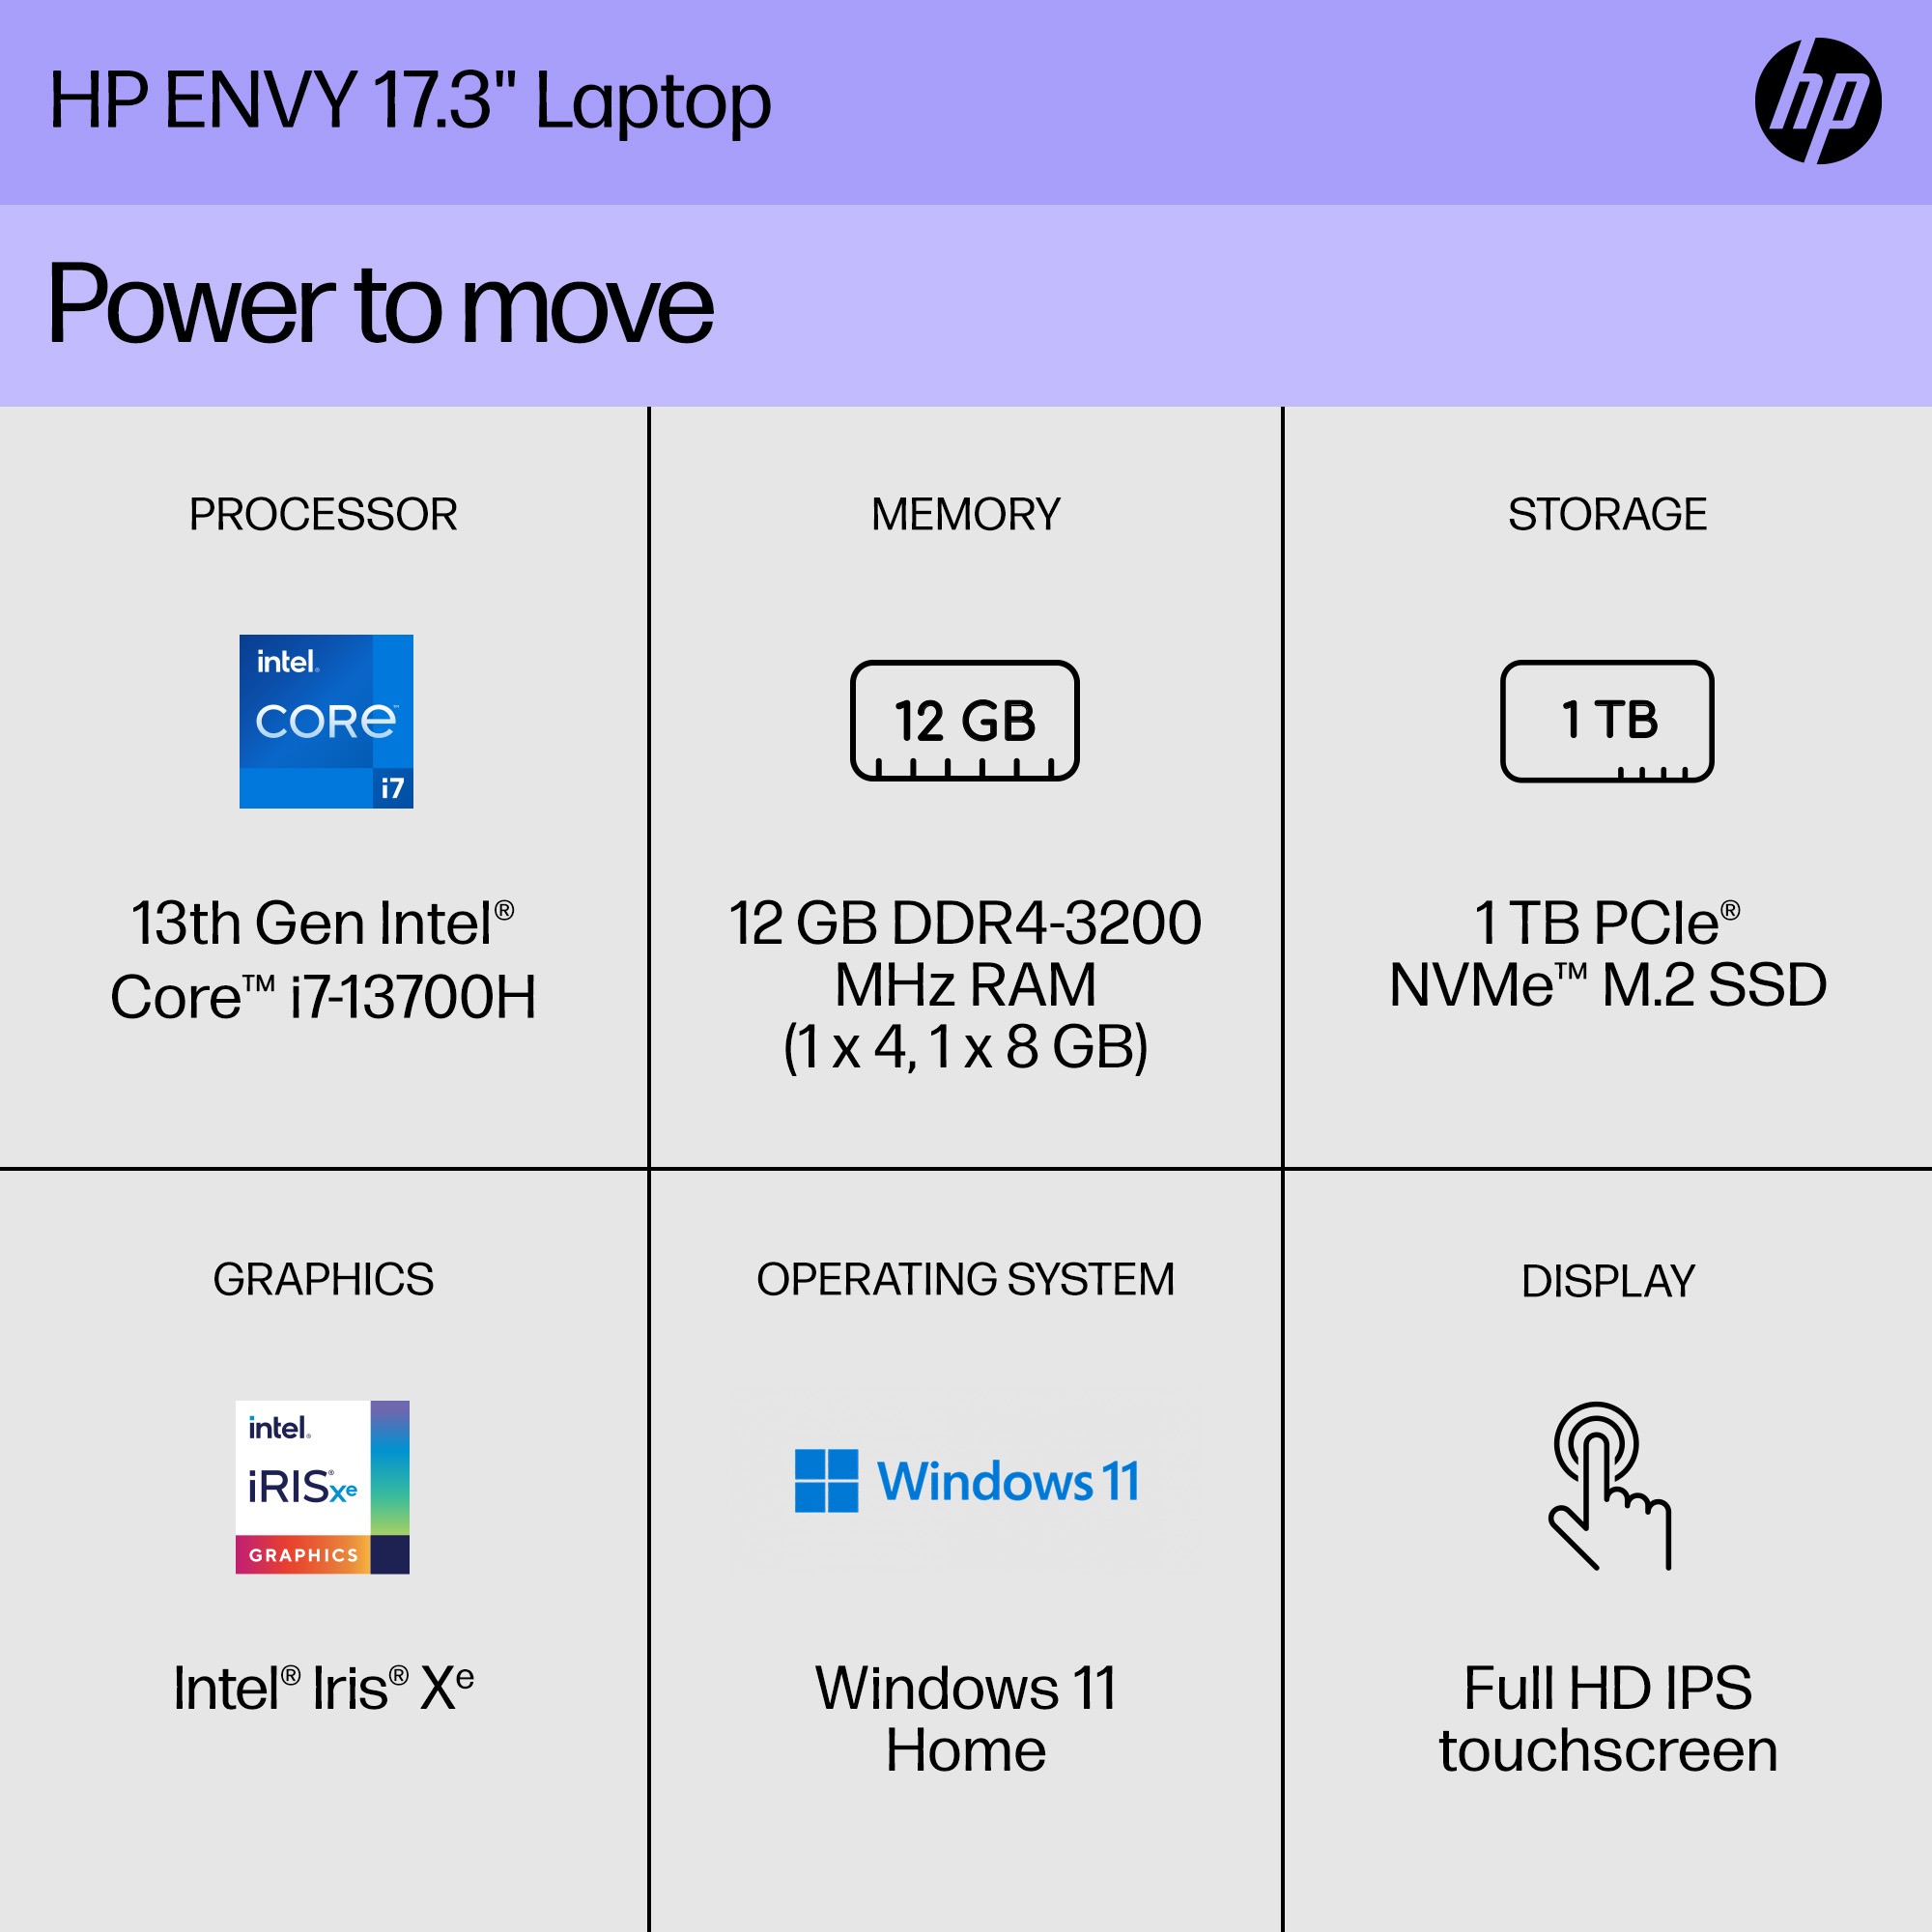 HP ENVY 17.3